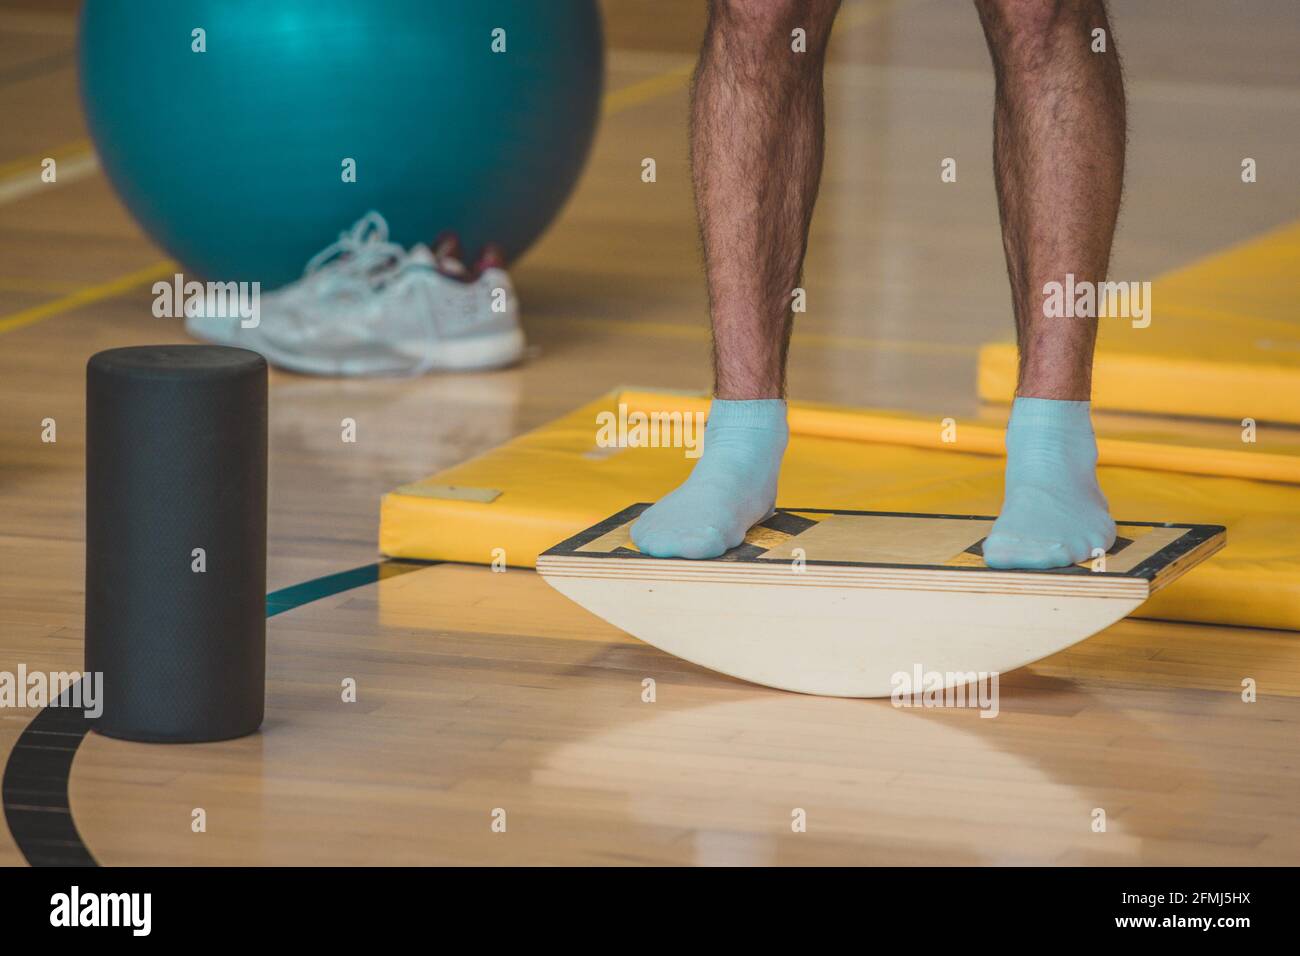 L'istruttore maschile ha visto usando una tavola di bilanciamento di legno. In una palestra al coperto si trovano diverse attrezzature sportive per l'equilibrio. Foto Stock